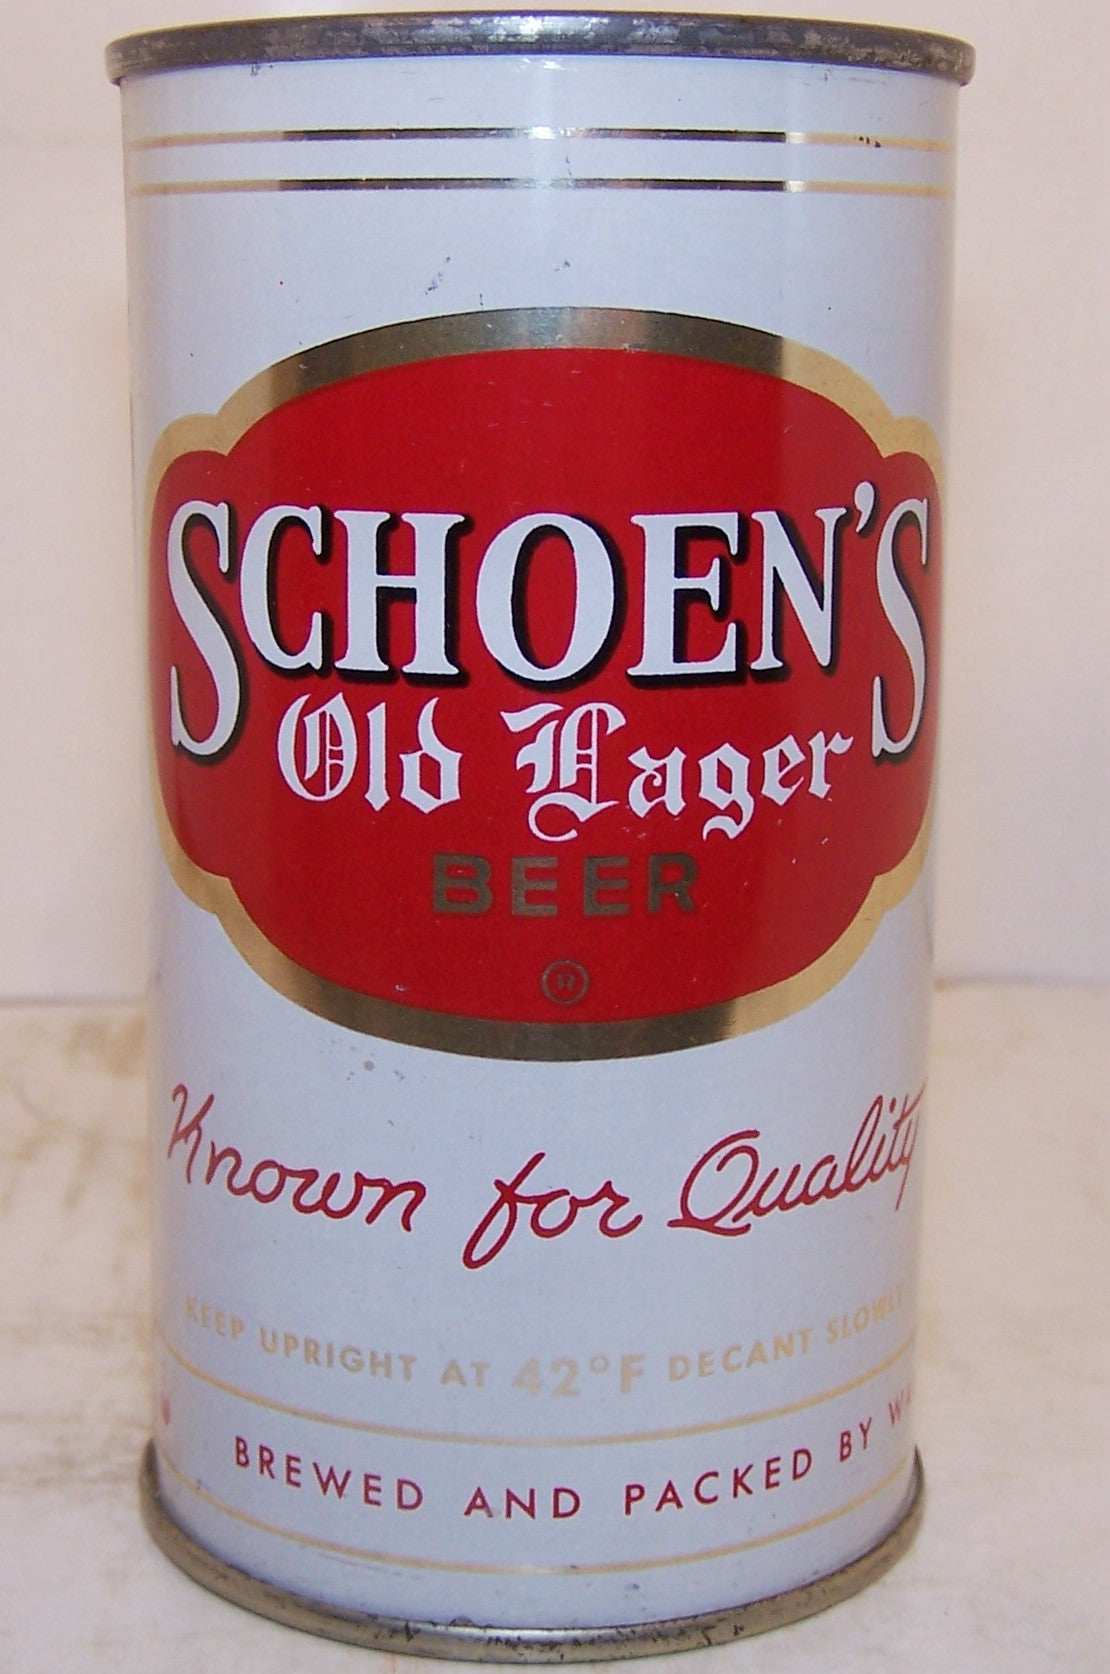 Schoen's Old Lager Beer, USBC 131-36, Grade 1/1+ Sold on 2/22/15